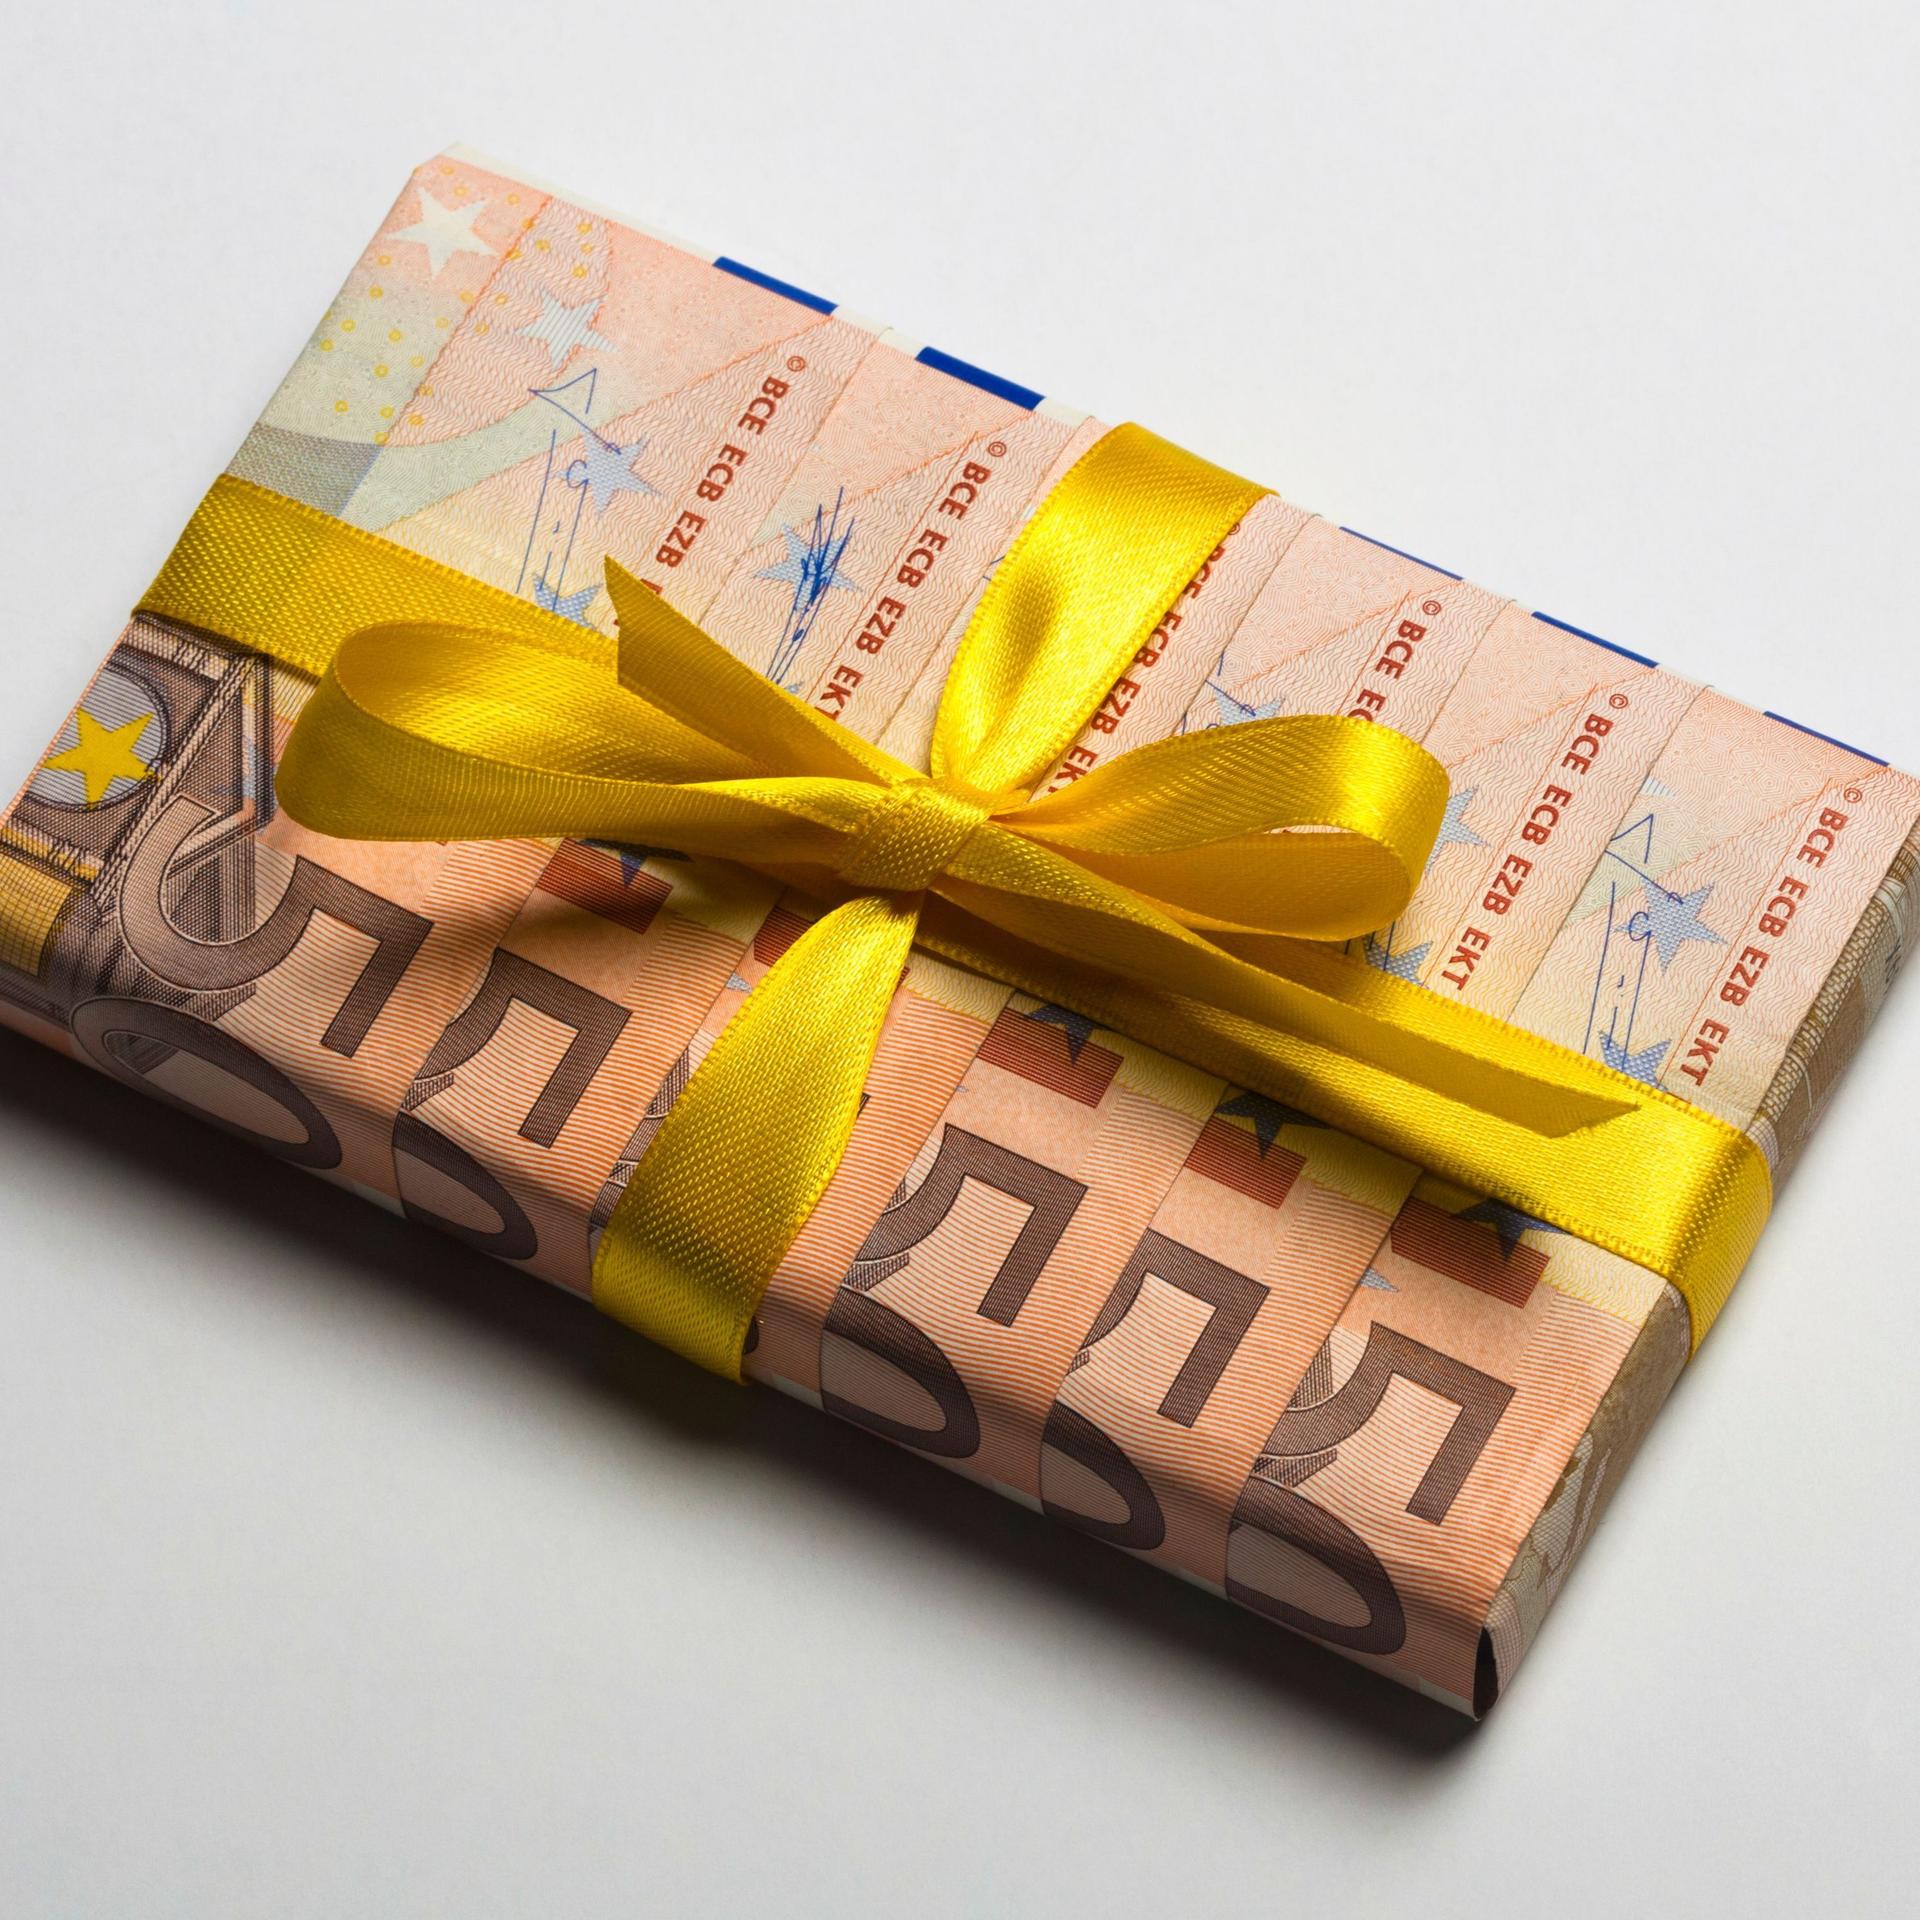 Fünfzig Euro-Geldscheine, die gefaltet wurden, um ein Geschenk damit zu verpacken. Darum ist eine gelbe Schleife aus Geschenkband.